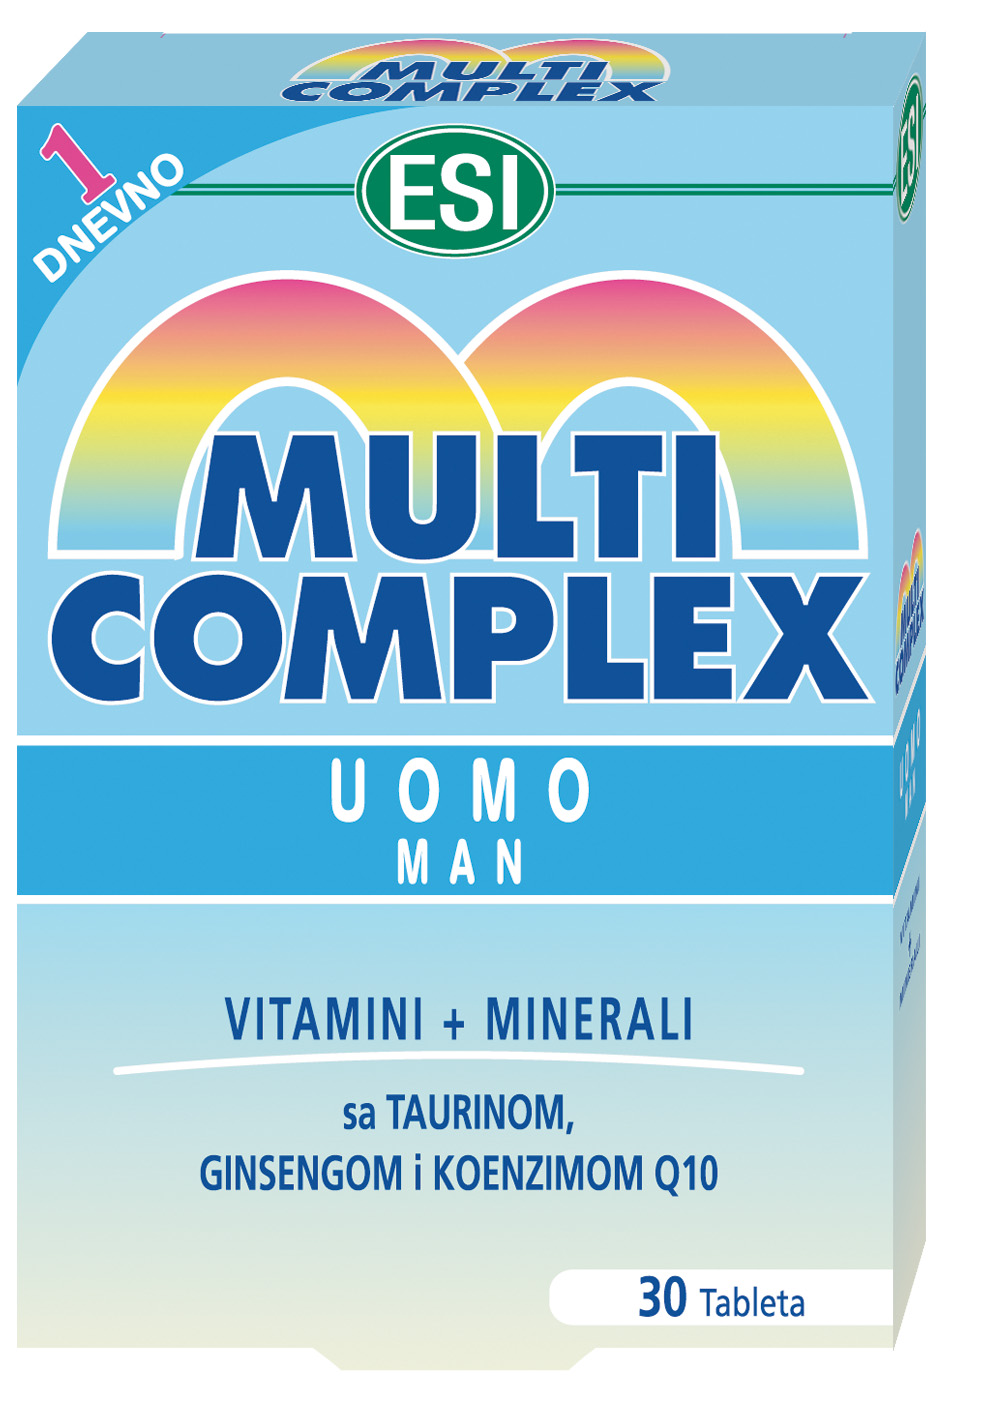 MULTICOMPLEX UOMO A30-0